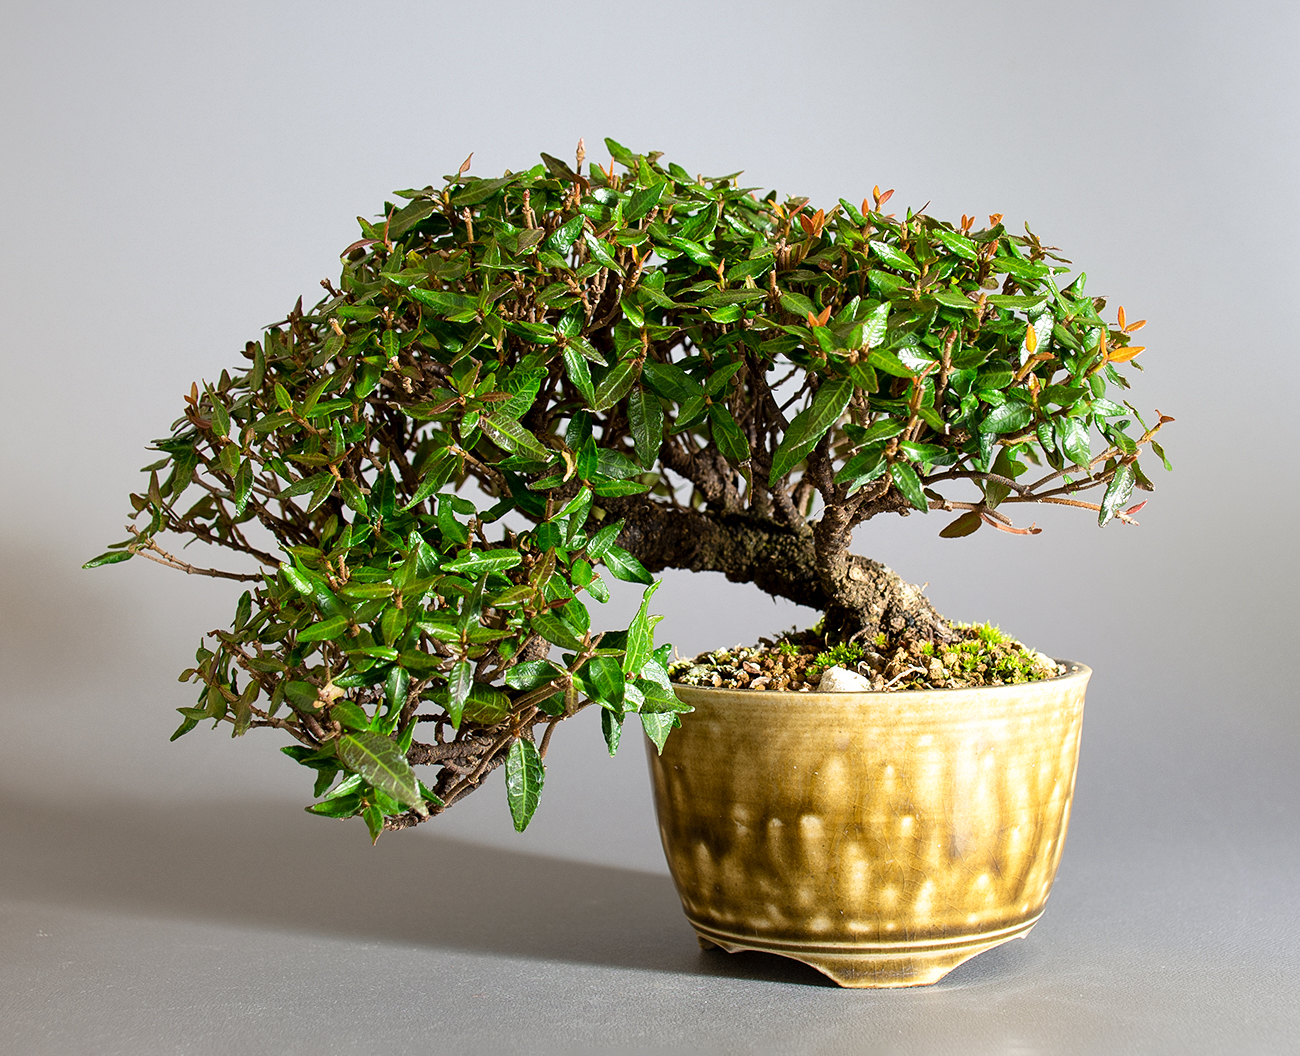 チリメンカズラ-D2-1（ちりめんかずら・縮緬葛）雑木盆栽の販売と育て方・作り方・Chirimen kazura bonsai